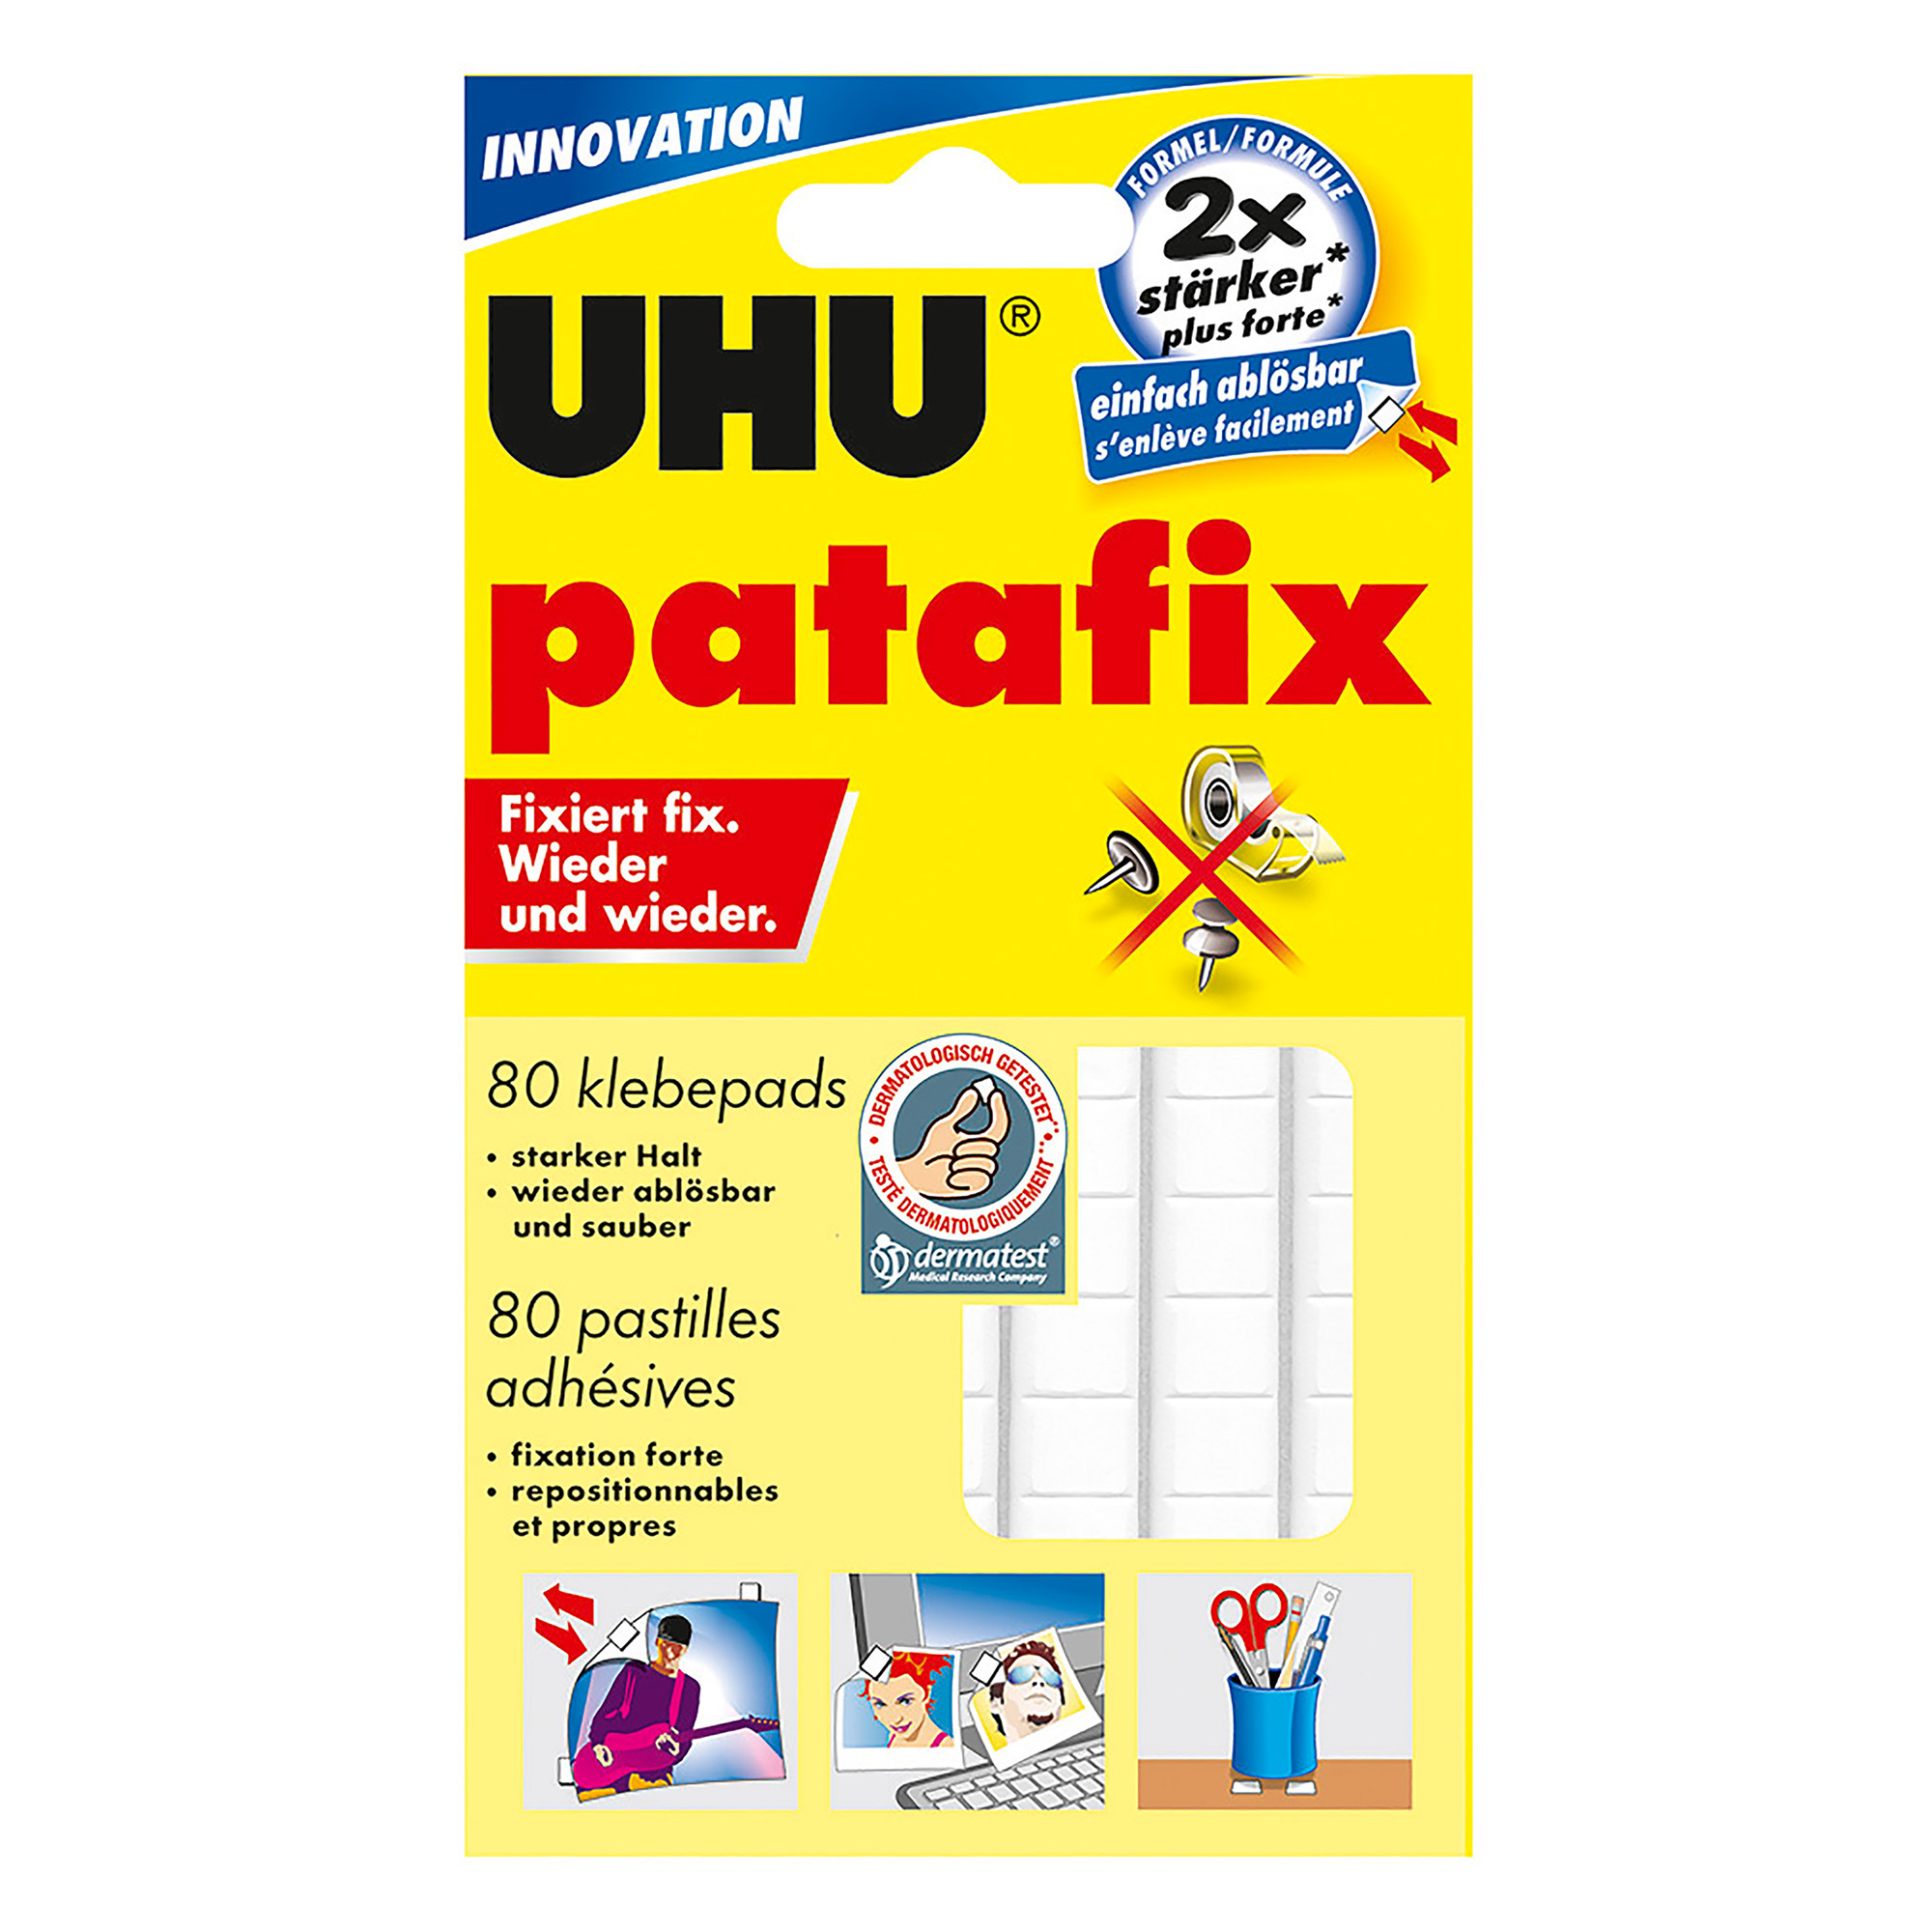 UHU Patafix 41710 - Gomma adesiva removibile, Bianco, confezione da 80  gommini : : Casa e cucina